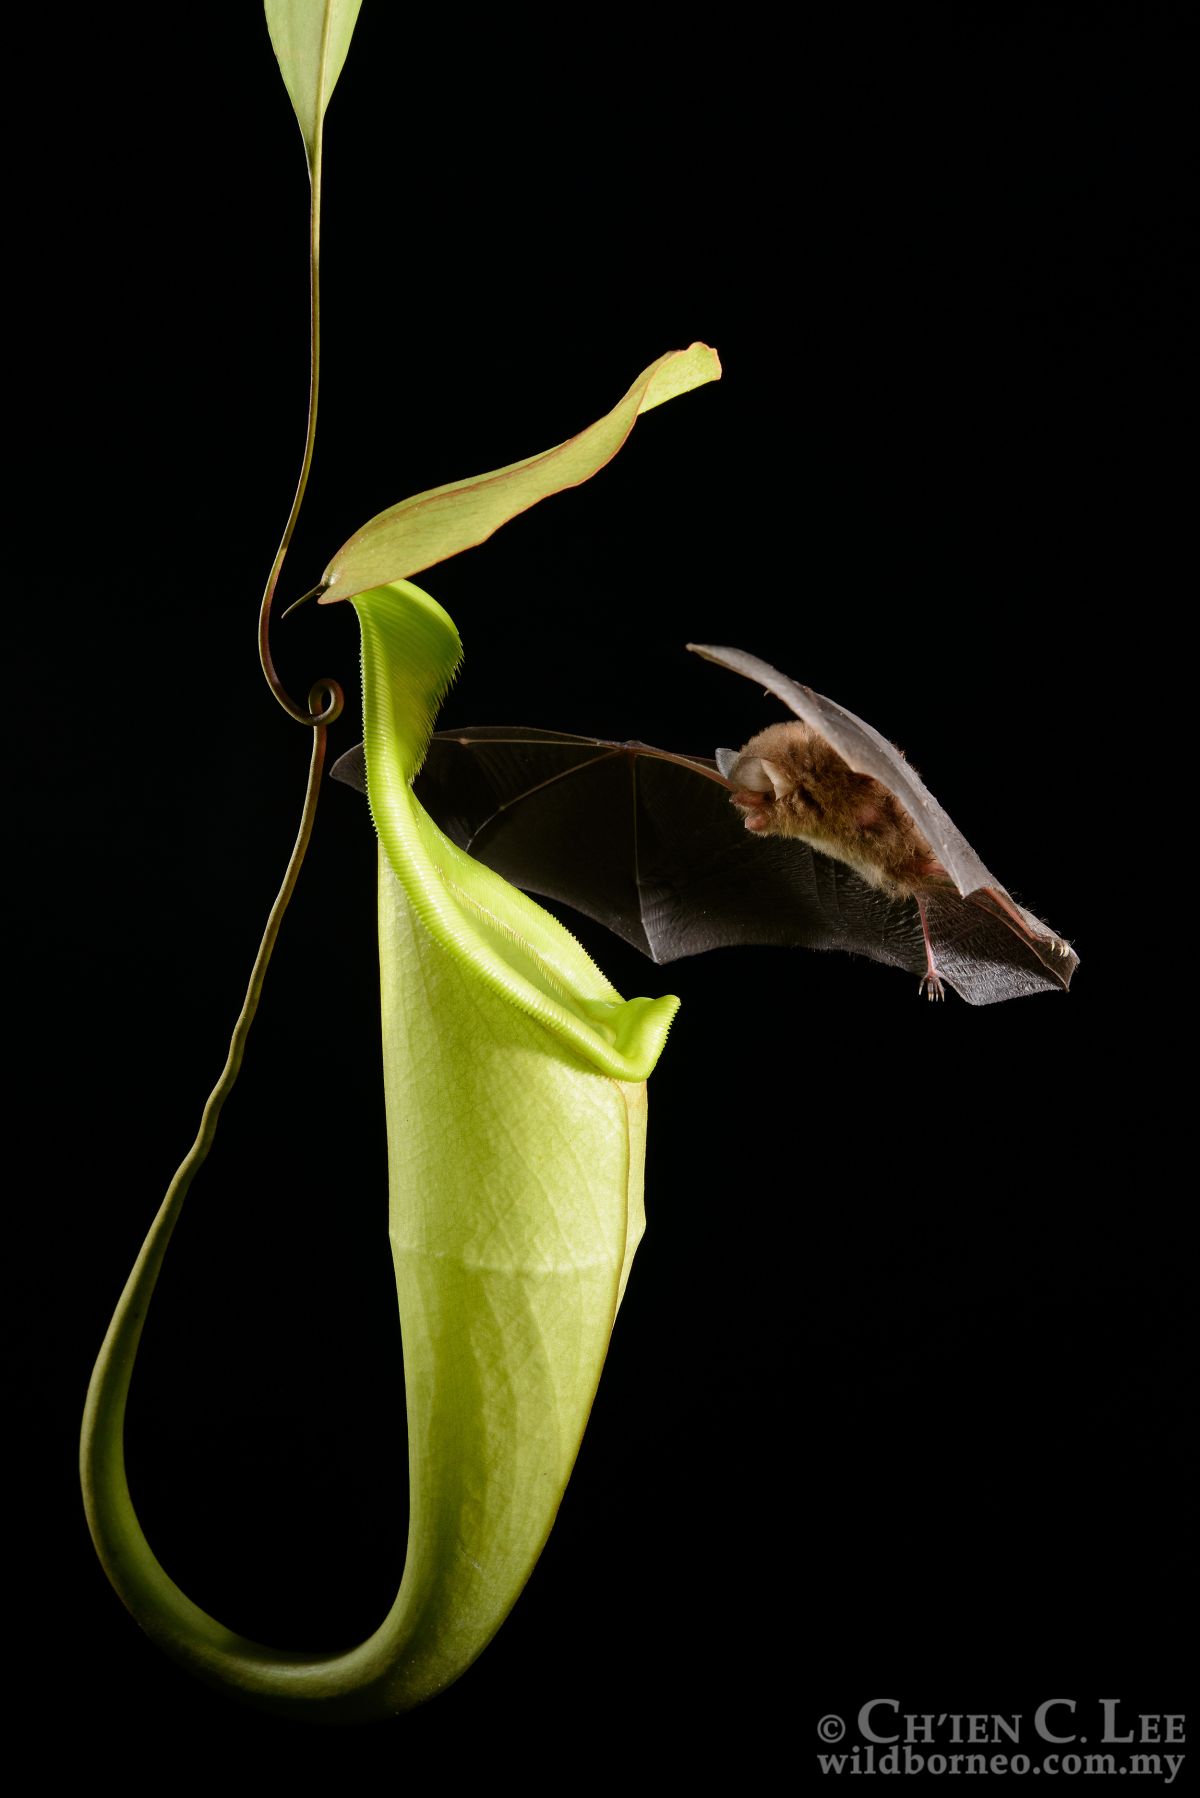 Fledermaus beim Anflug an eine Kannenpflanze. Die auf Borneo vorkommende Kannenpflanzenart Nepenthes hemsleyana lockt Fledermäuse mit einem Echoreflektor an.